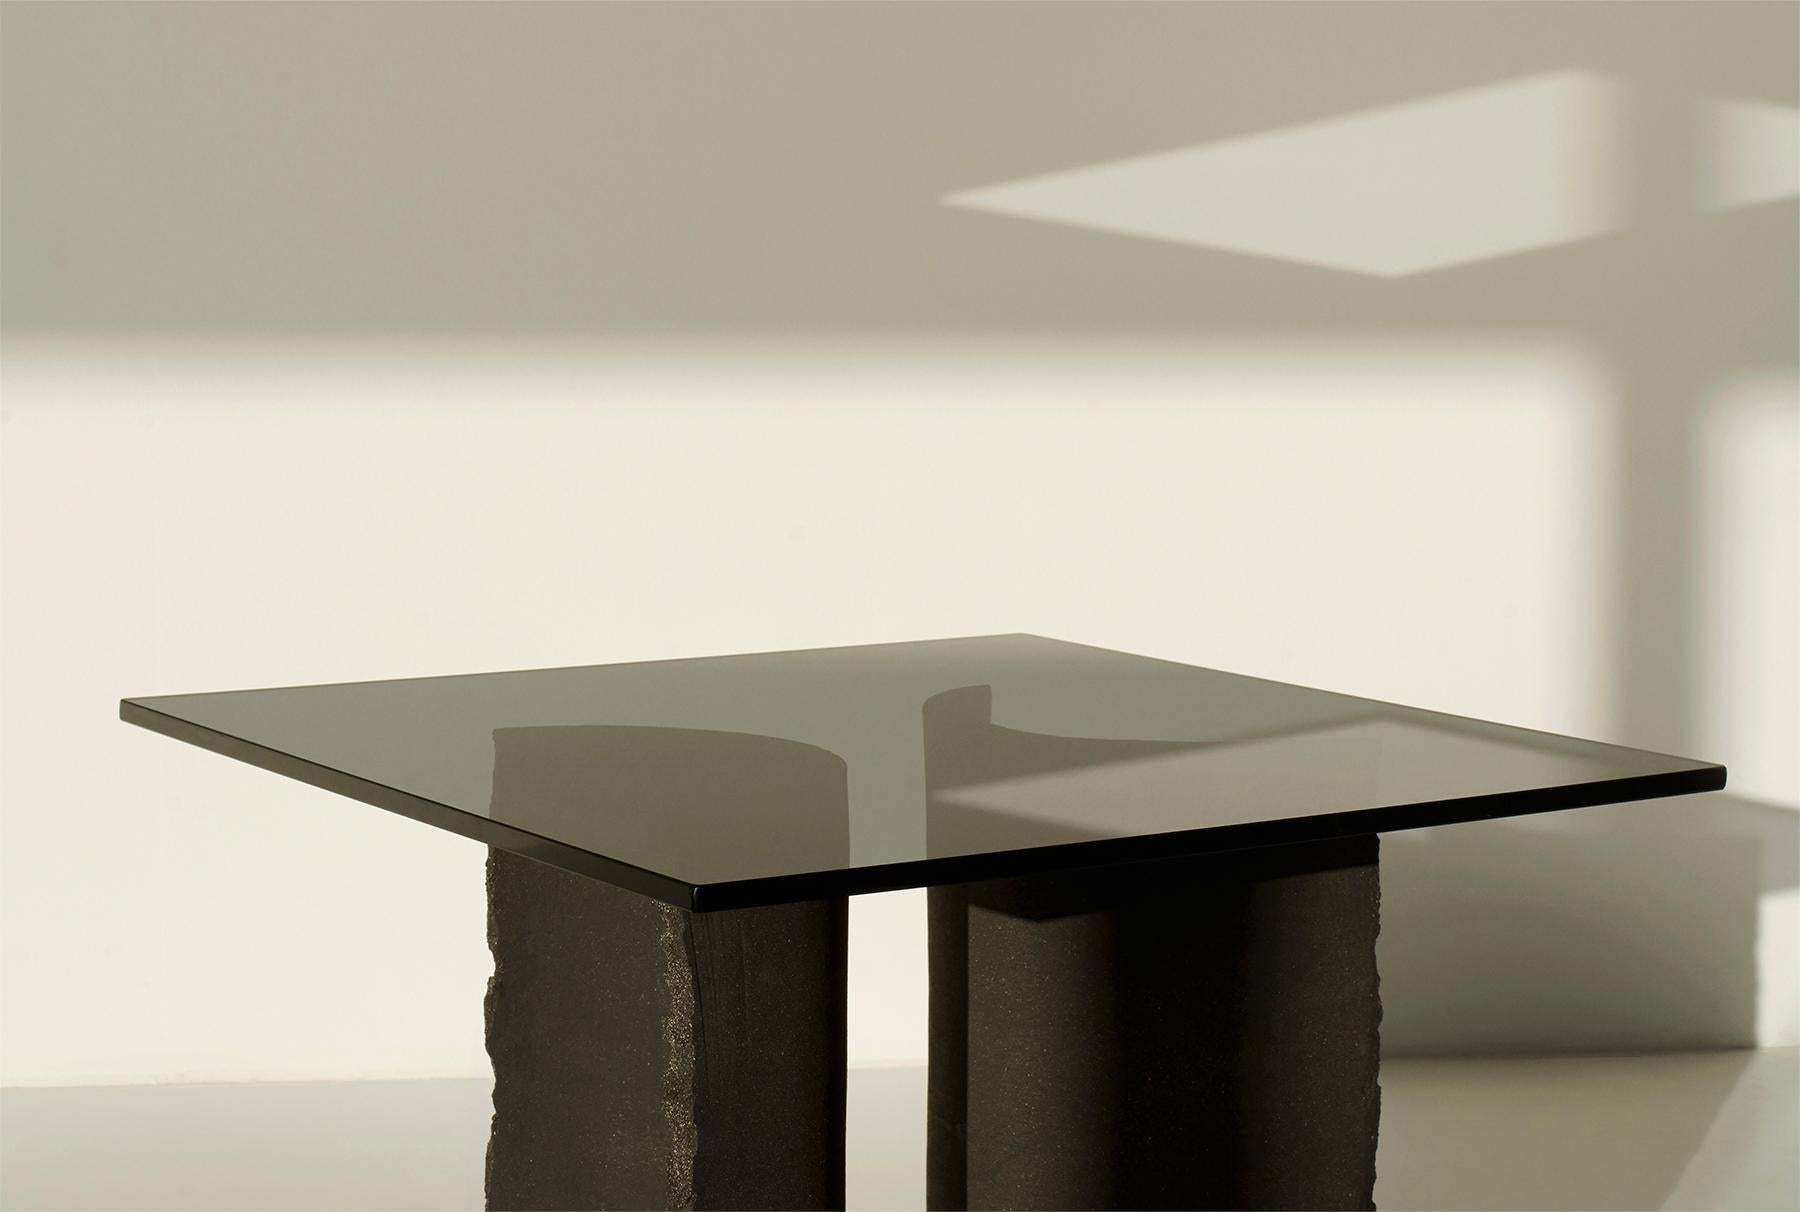 Swedish Common Effort Hand-Sculpted Black Clay Table by Sanna Völker